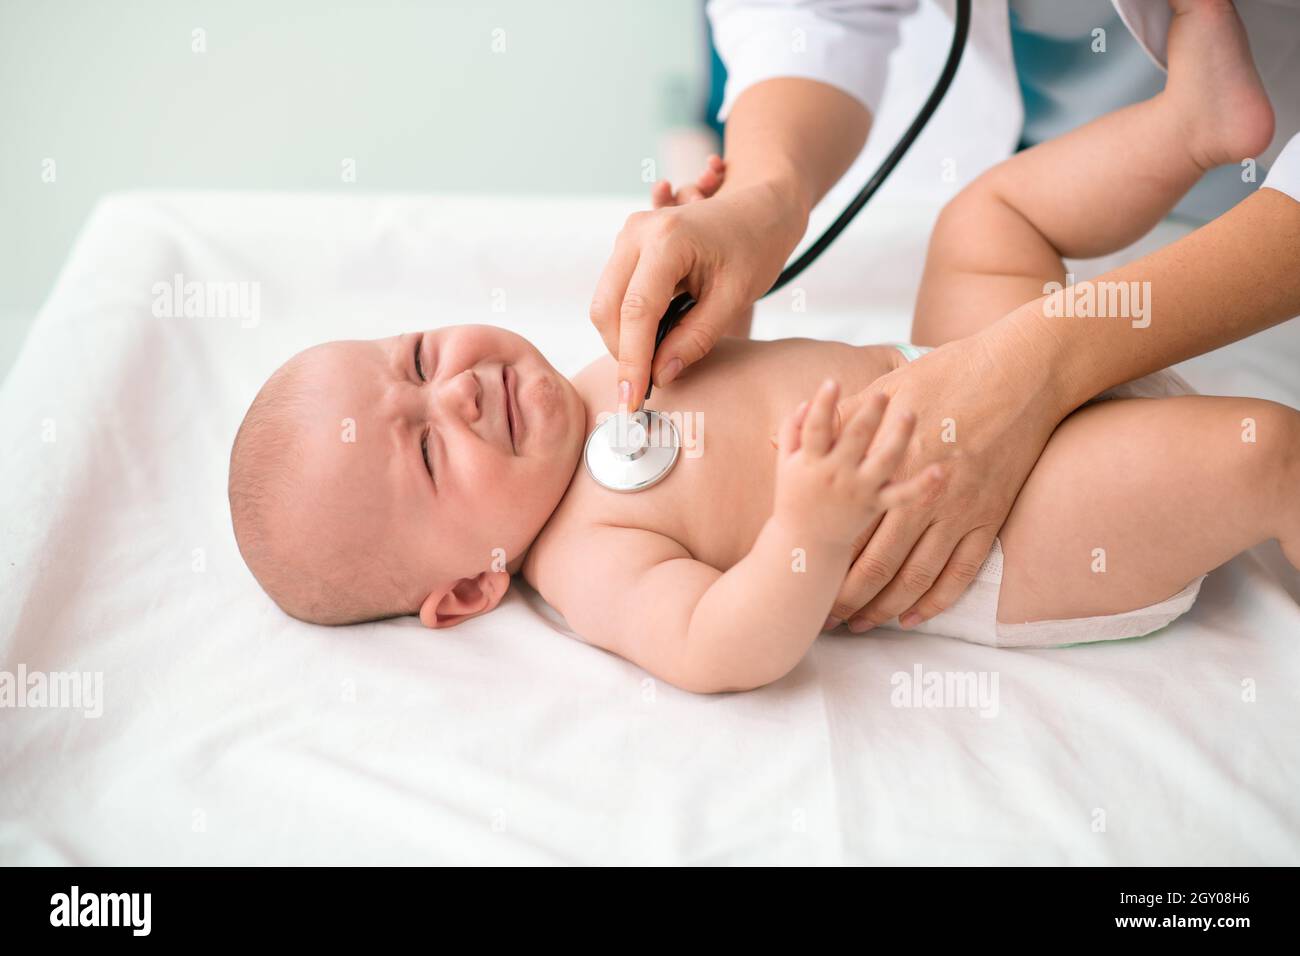 Nettes kaukasisches Neugeborenes, das sich einer medizinischen Untersuchung unterziehen wird Stockfoto